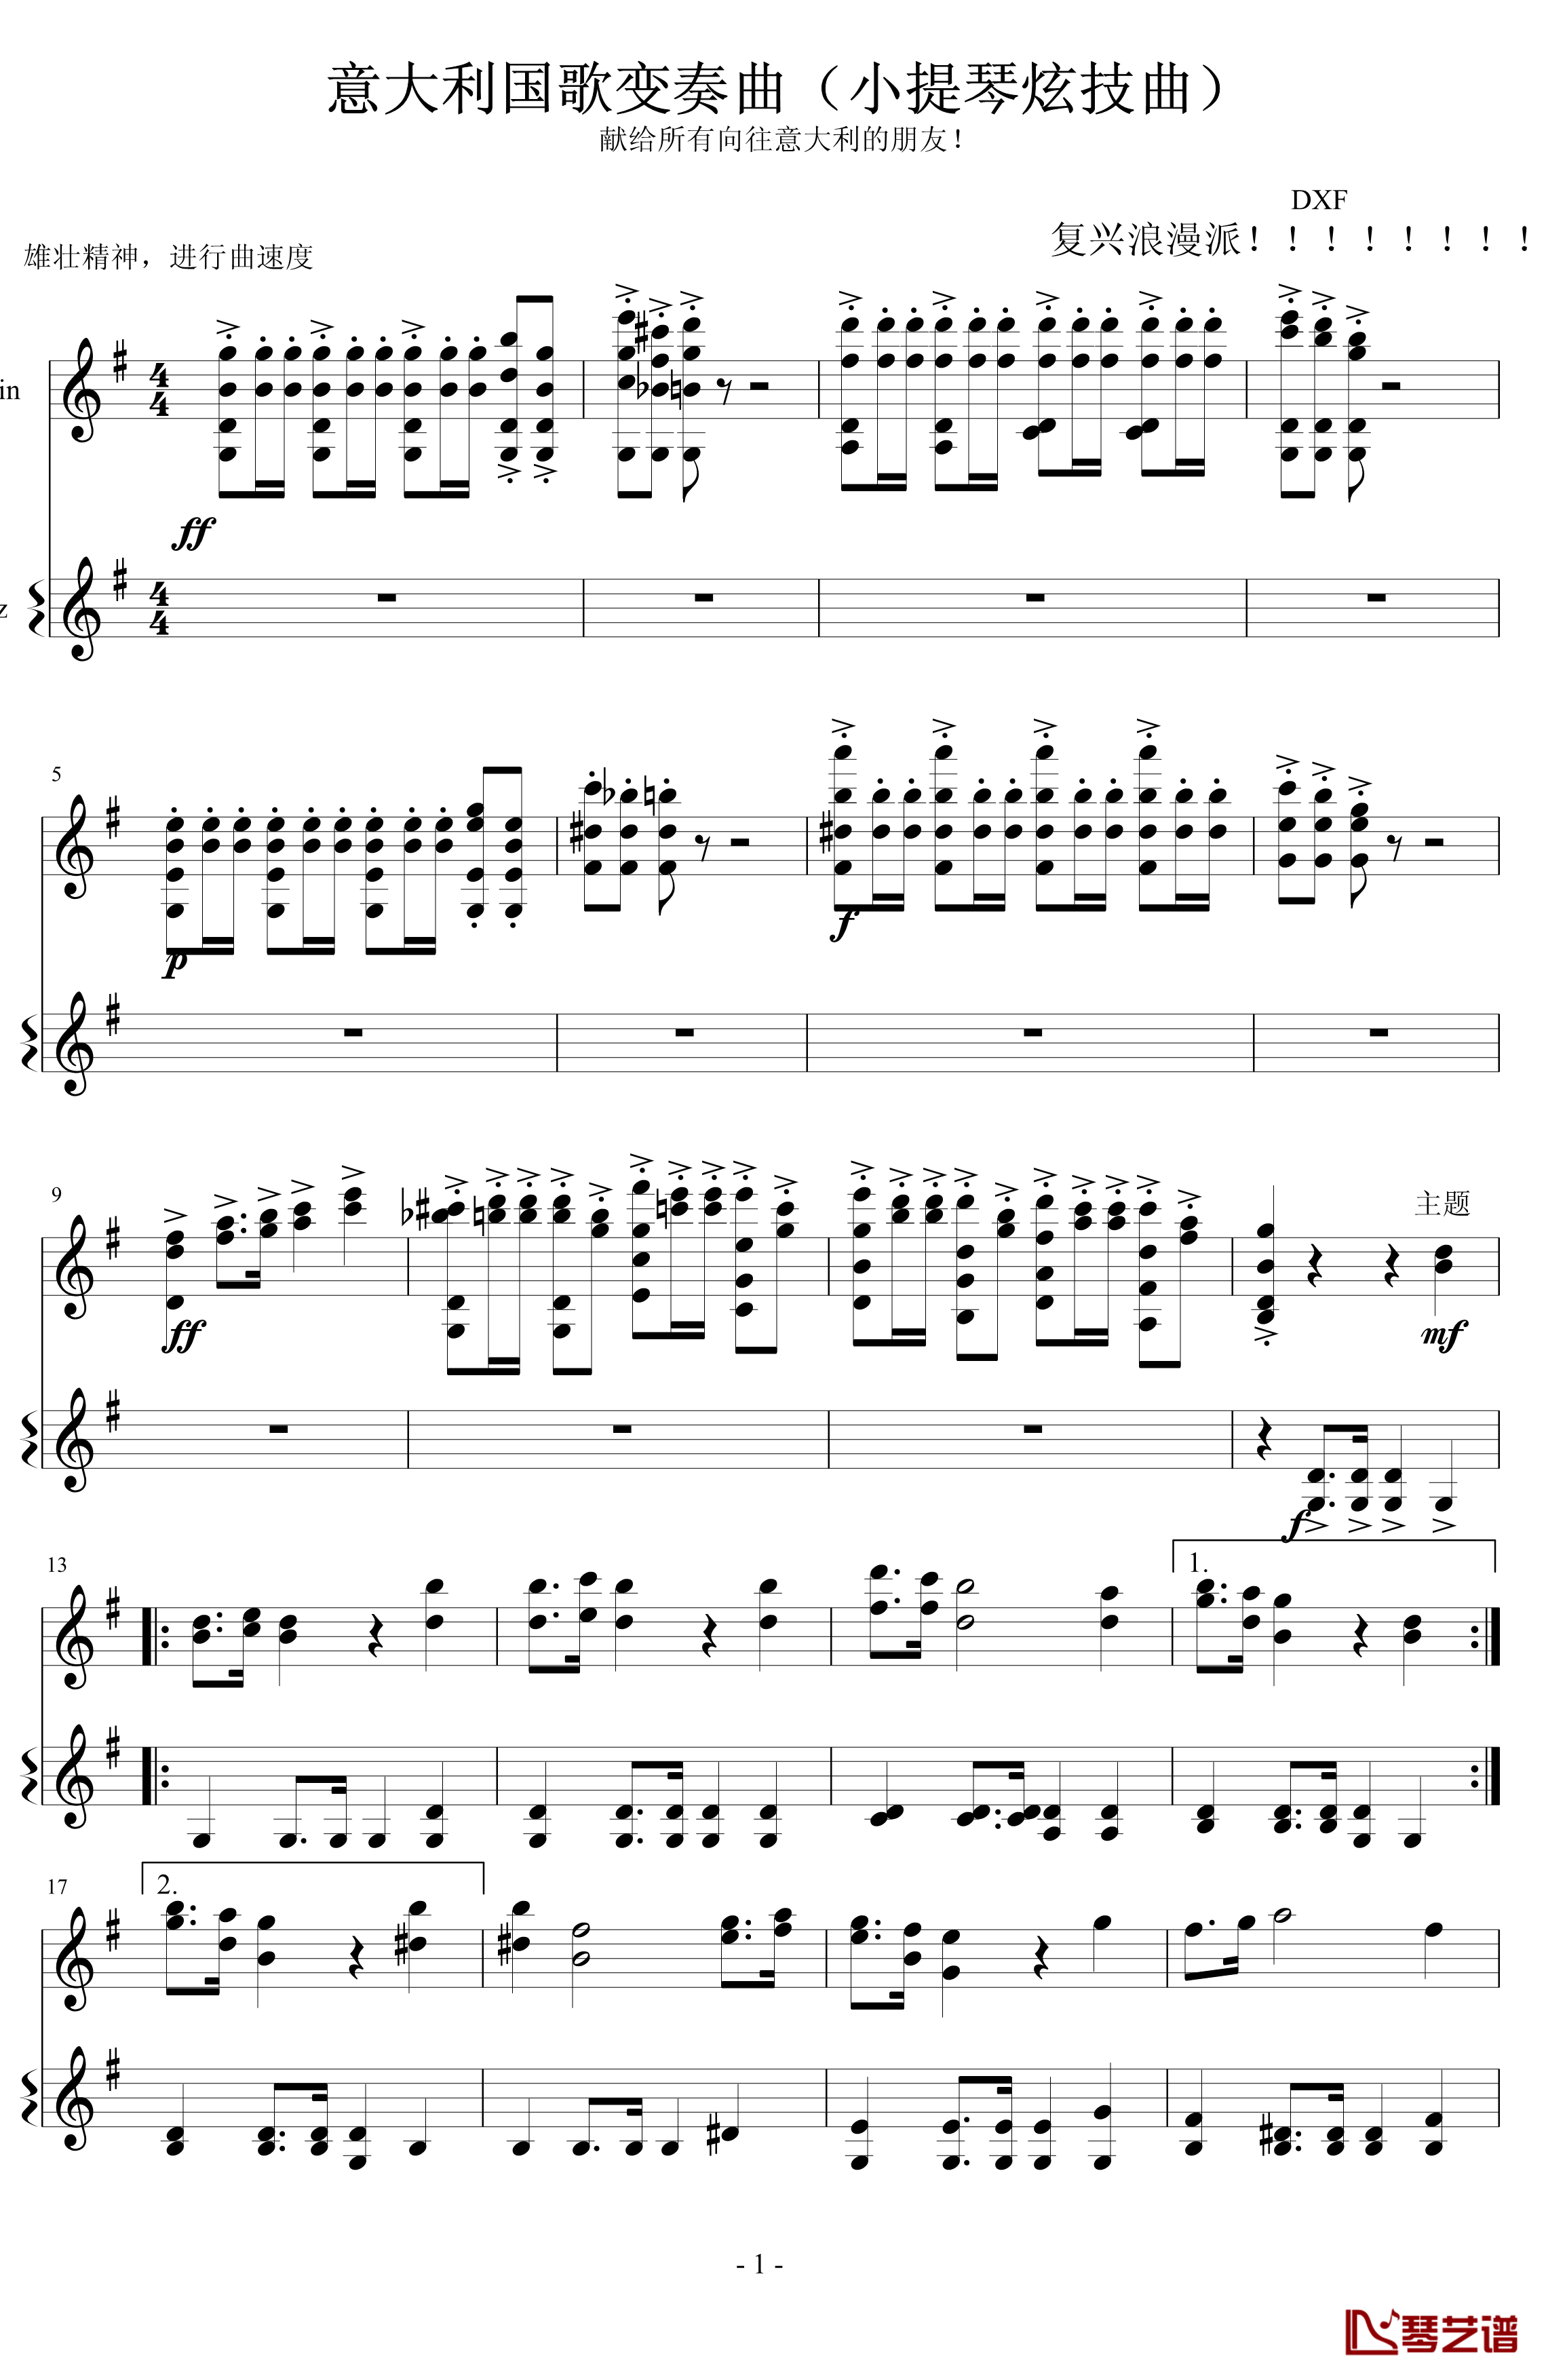 意大利国歌变奏曲钢琴谱-DXF1